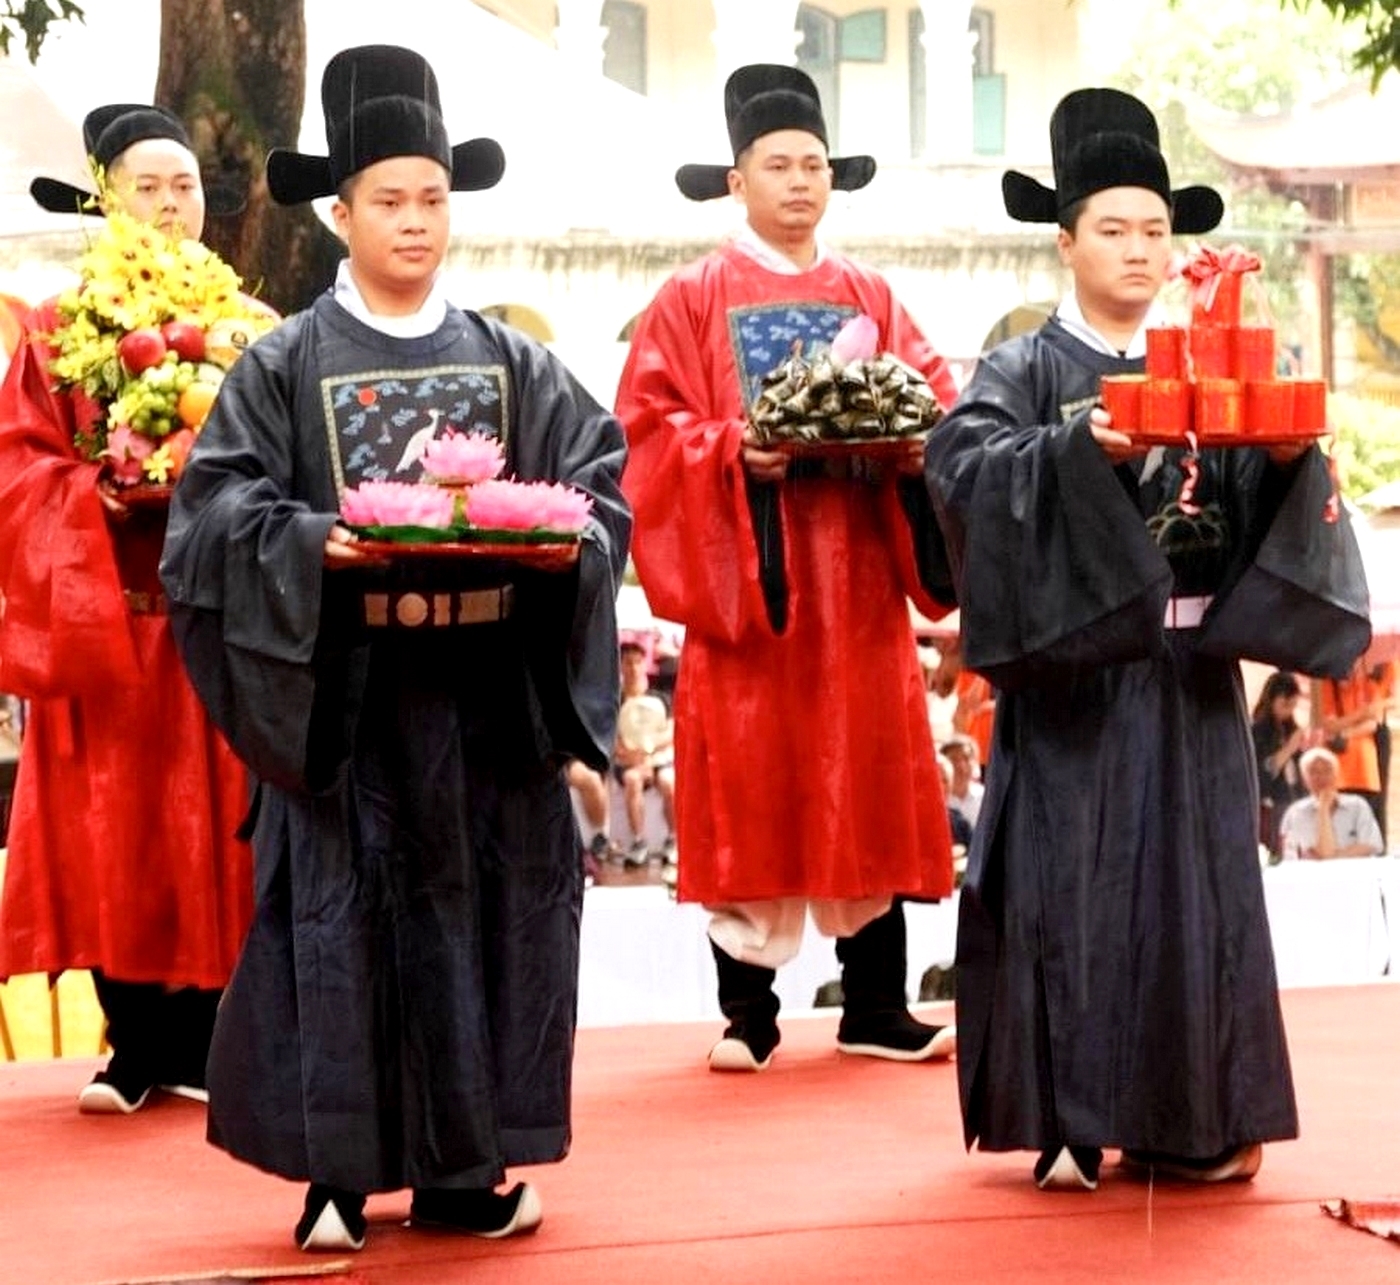 Hoạt động tái hiện nghi lễ tiến phẩm, dâng hương lên các vị tiên đế trong cung đình Thăng Long xưa nhân dịp Tết Đoan Ngọ.